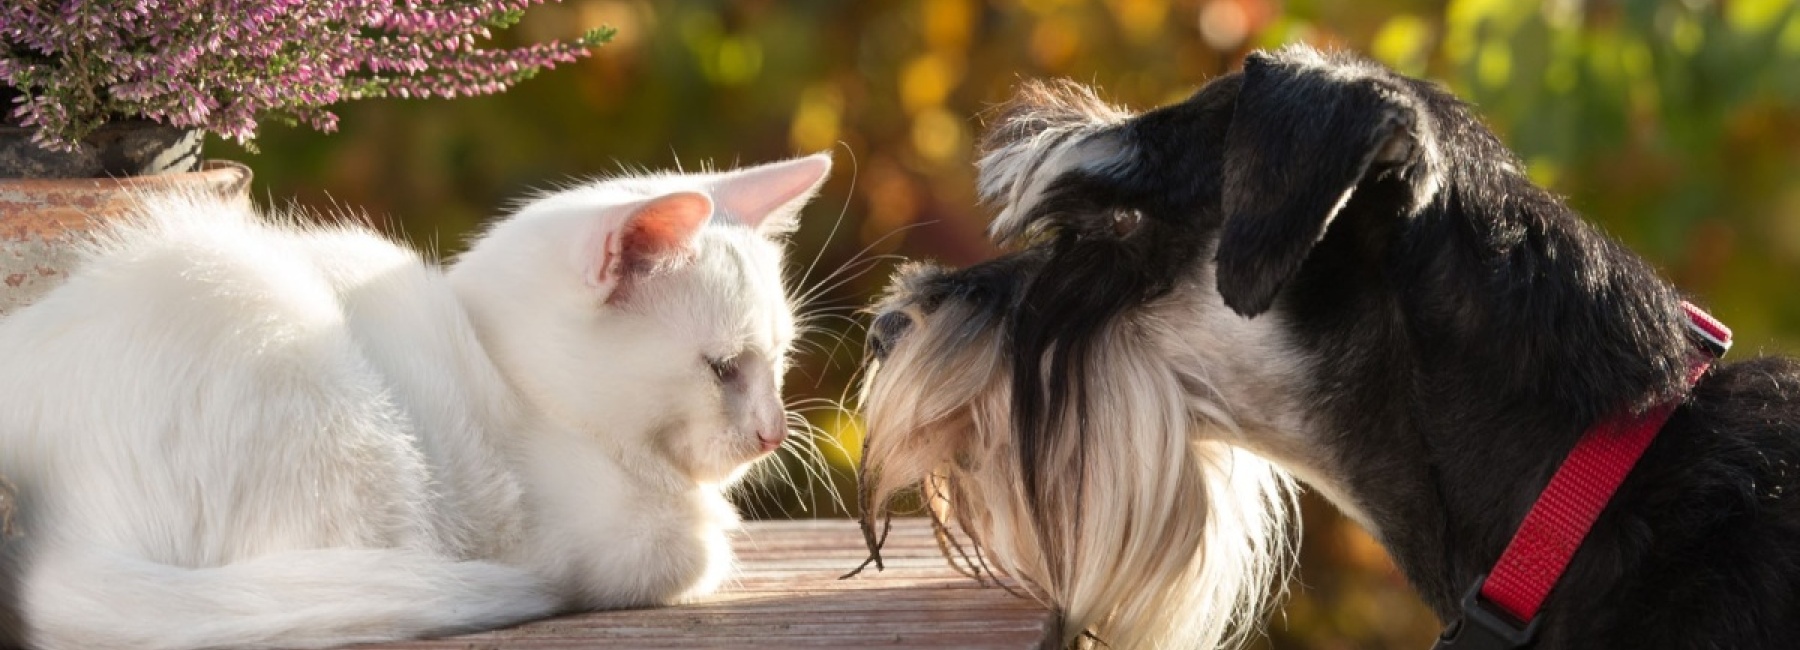 Kissa ja koira katsovat toisiaan. Kuvituskuva